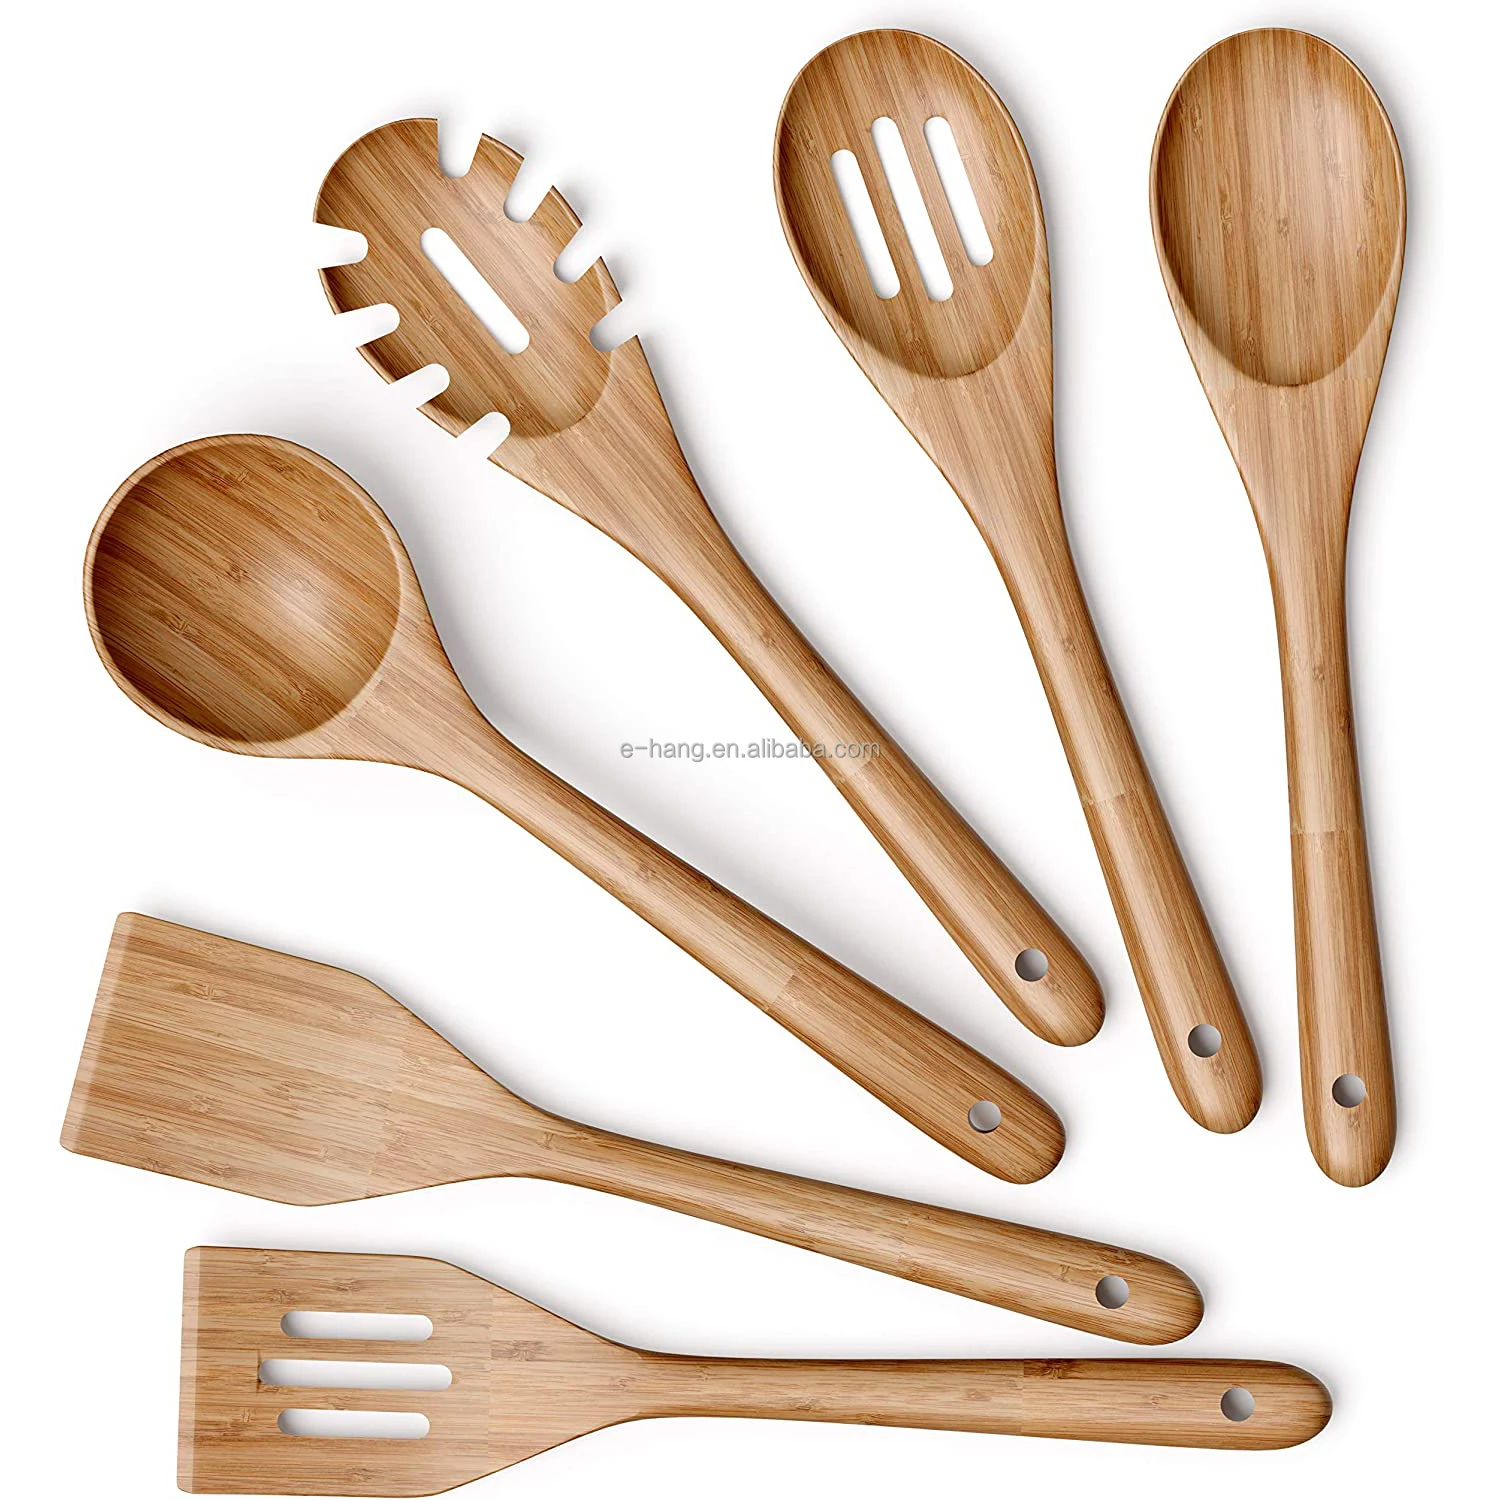 4 x bambou cuillères en bois spatule cuillère de cuisine ustensiles de cuisson outils turner set 